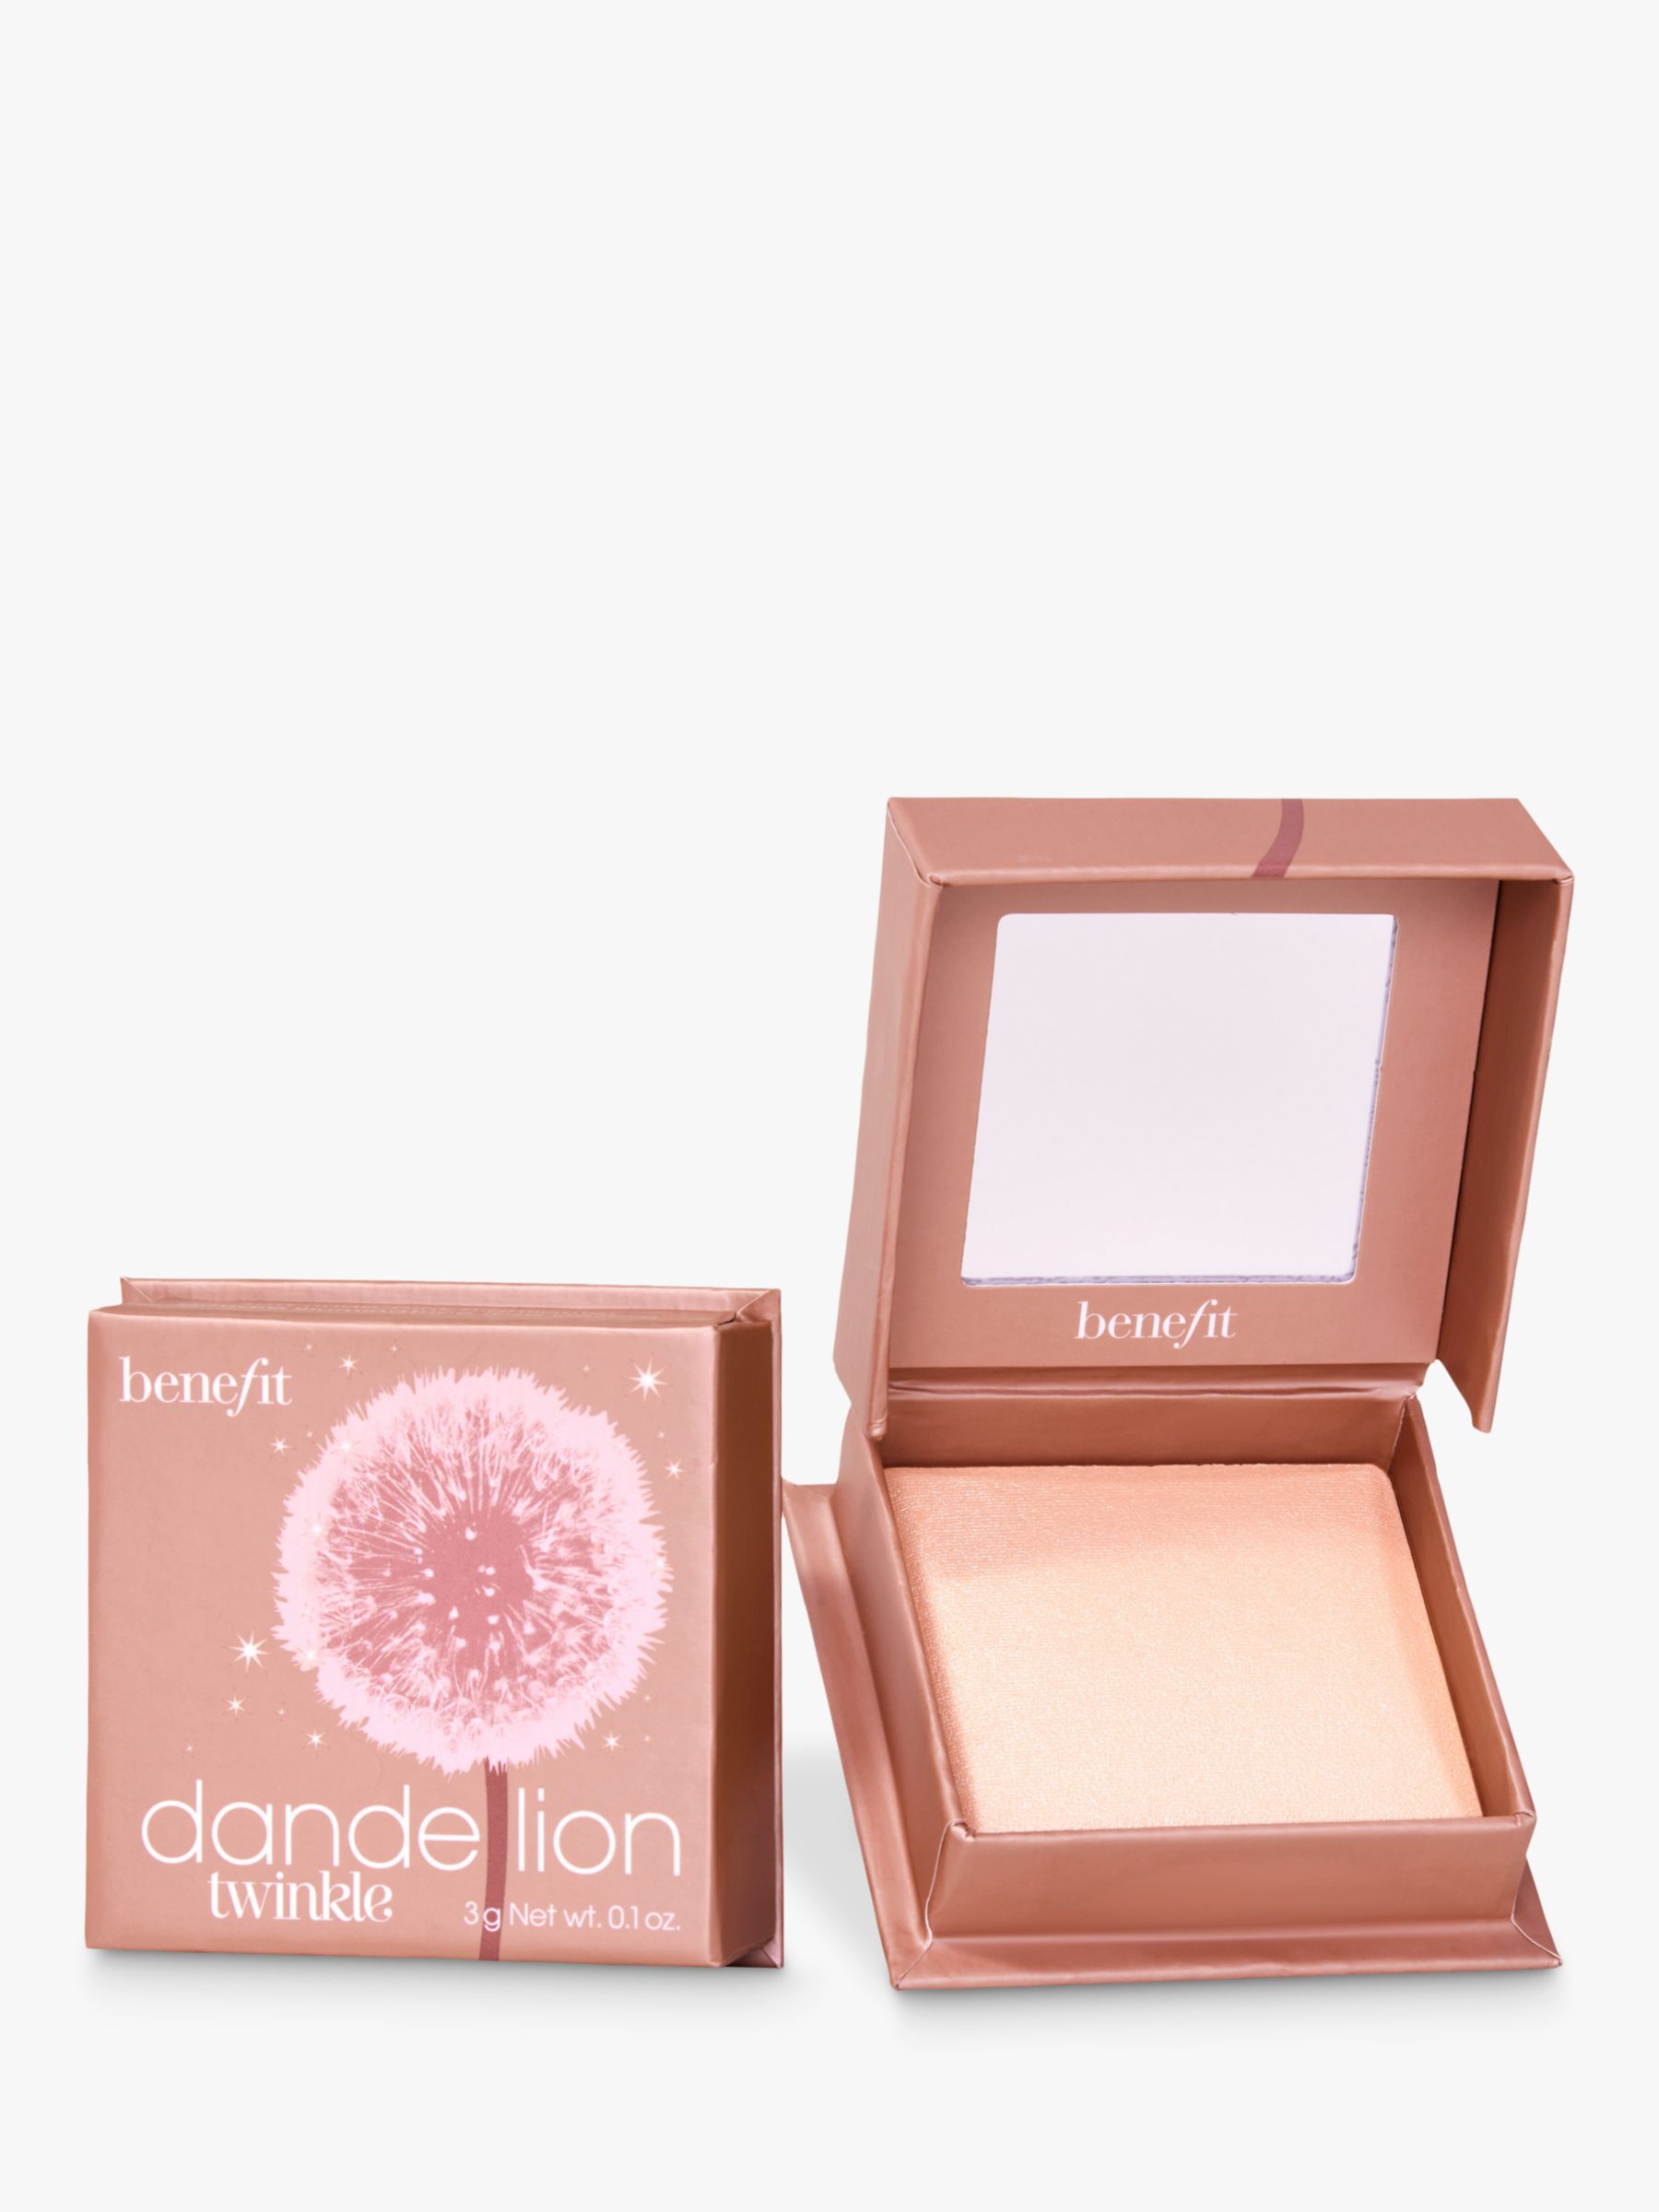 Benefit Dandelion Twinkle Highlighter